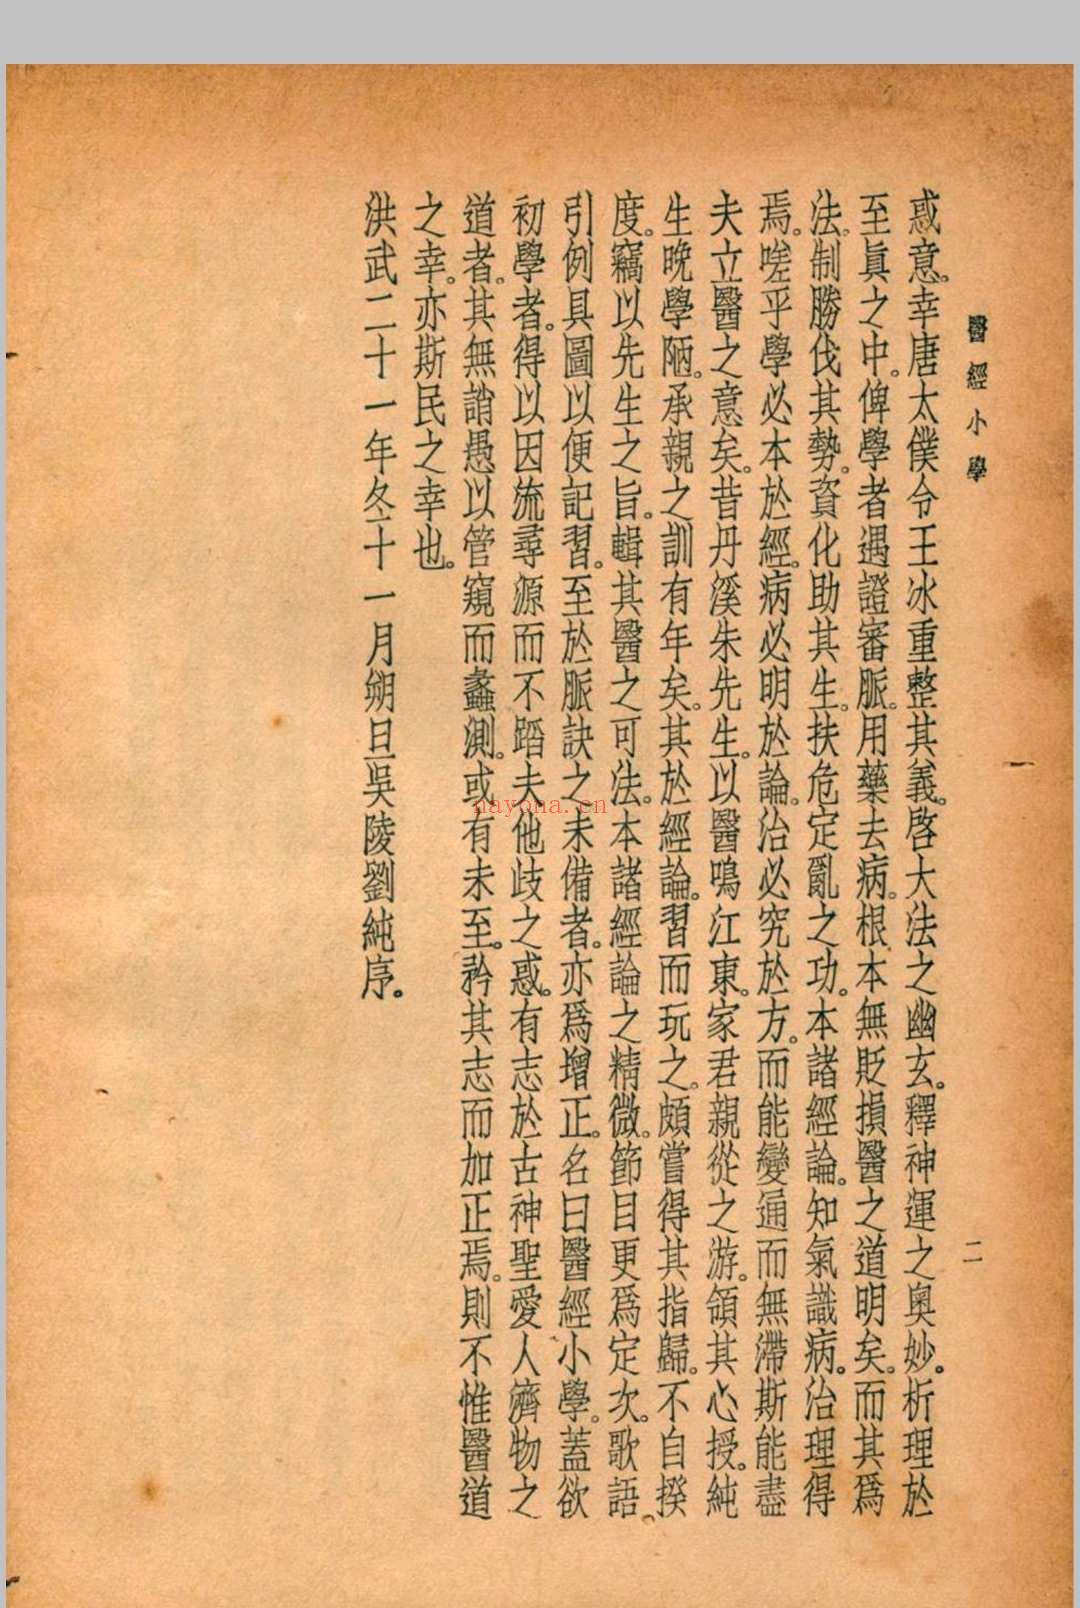 珍本医书集成 通志类(二) 第六册 裘吉生主编 1936 世界书局